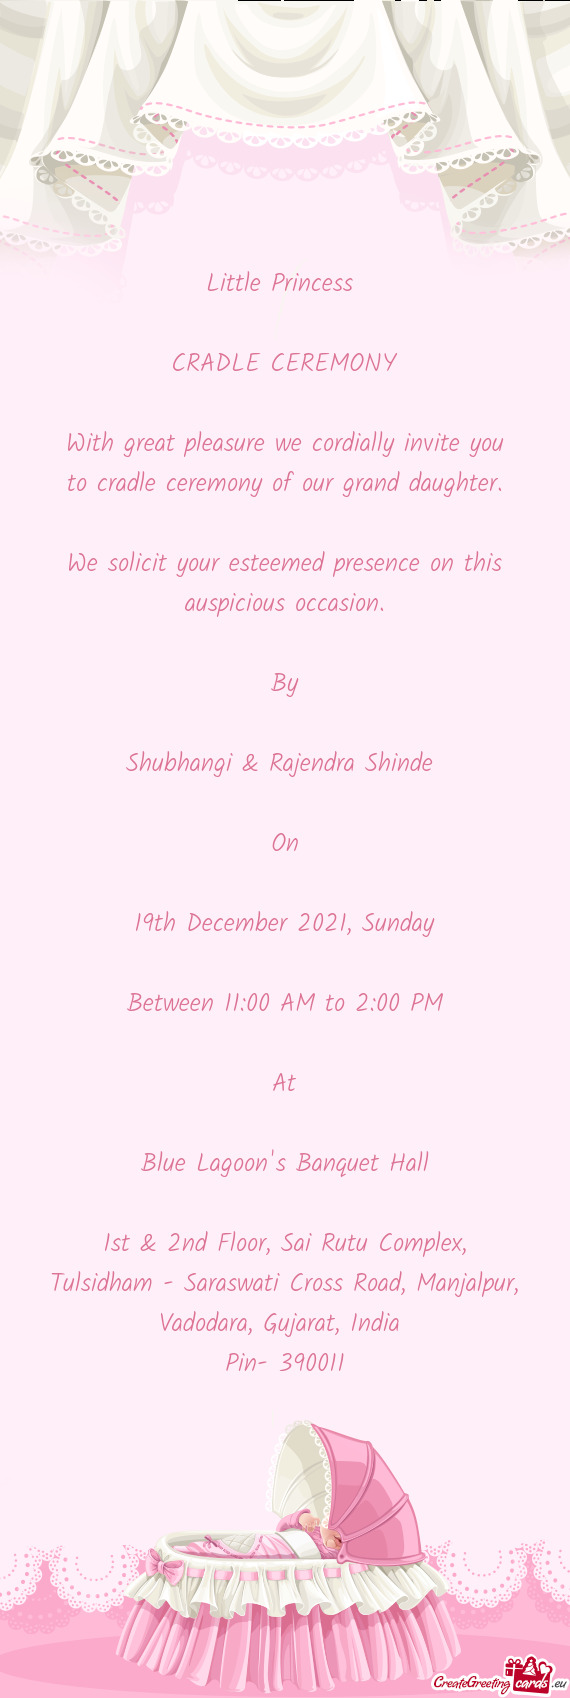 Shubhangi & Rajendra Shinde